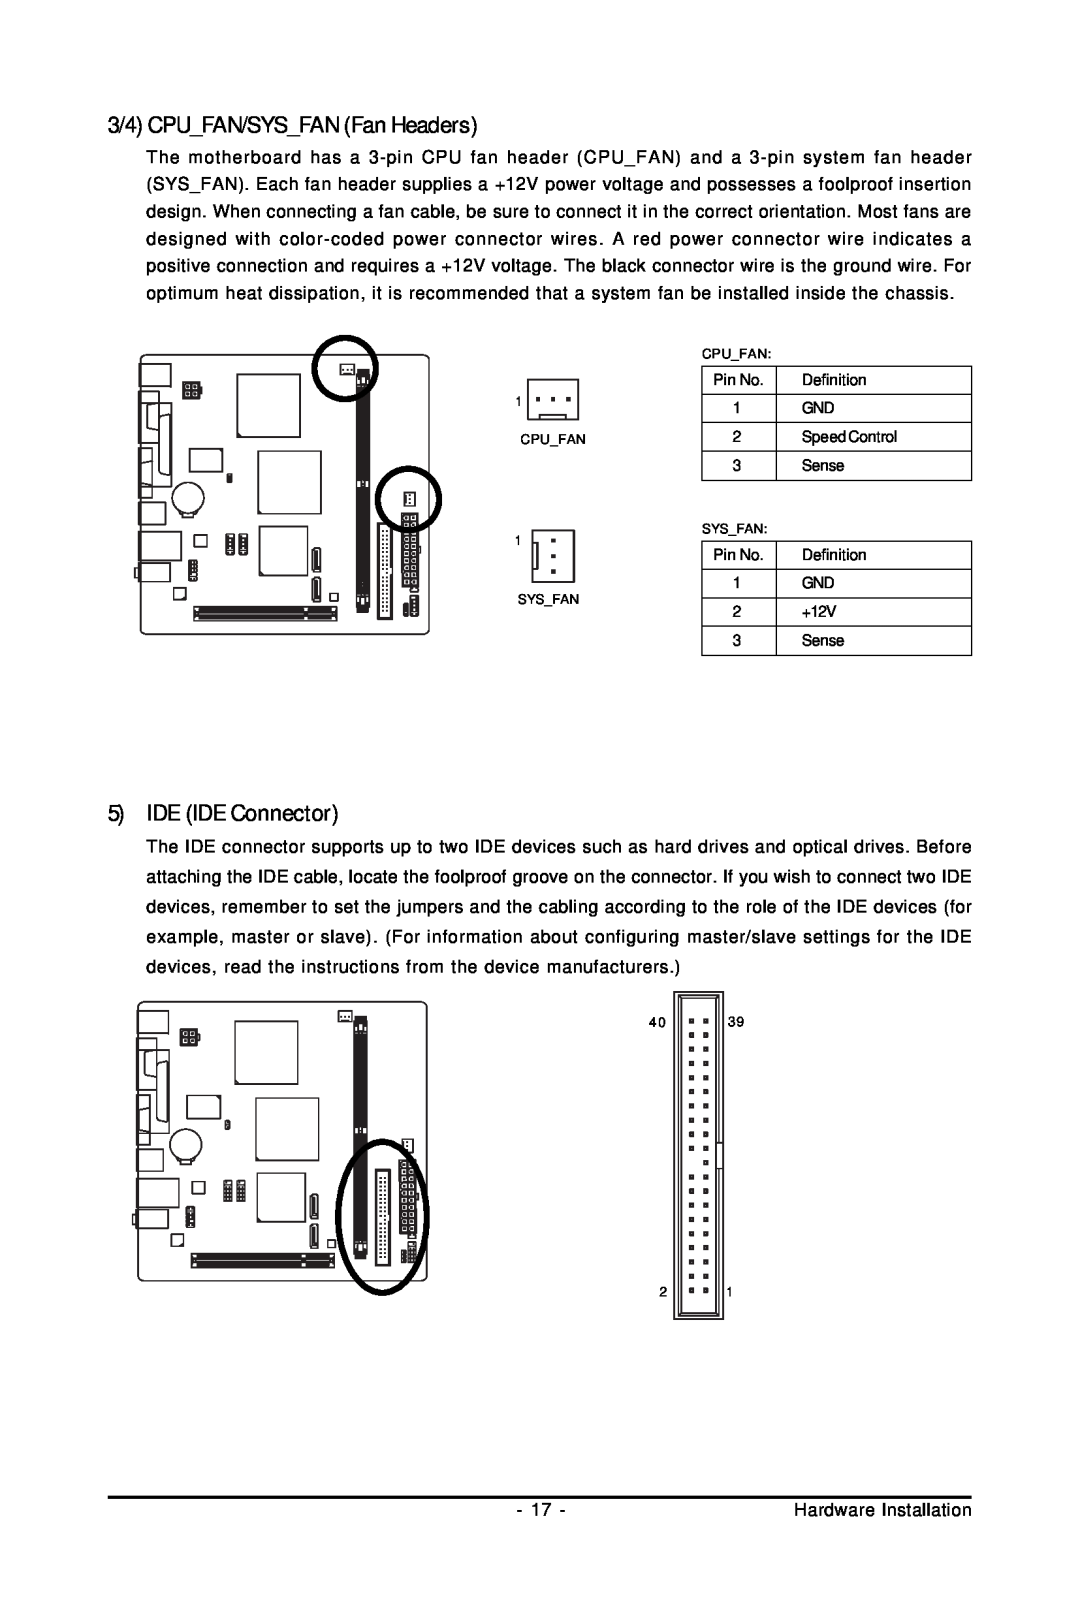 Intel GA-GC230D user manual 3/4 CPU FAN/SYS FAN Fan Headers, 5IDE IDE Connector 